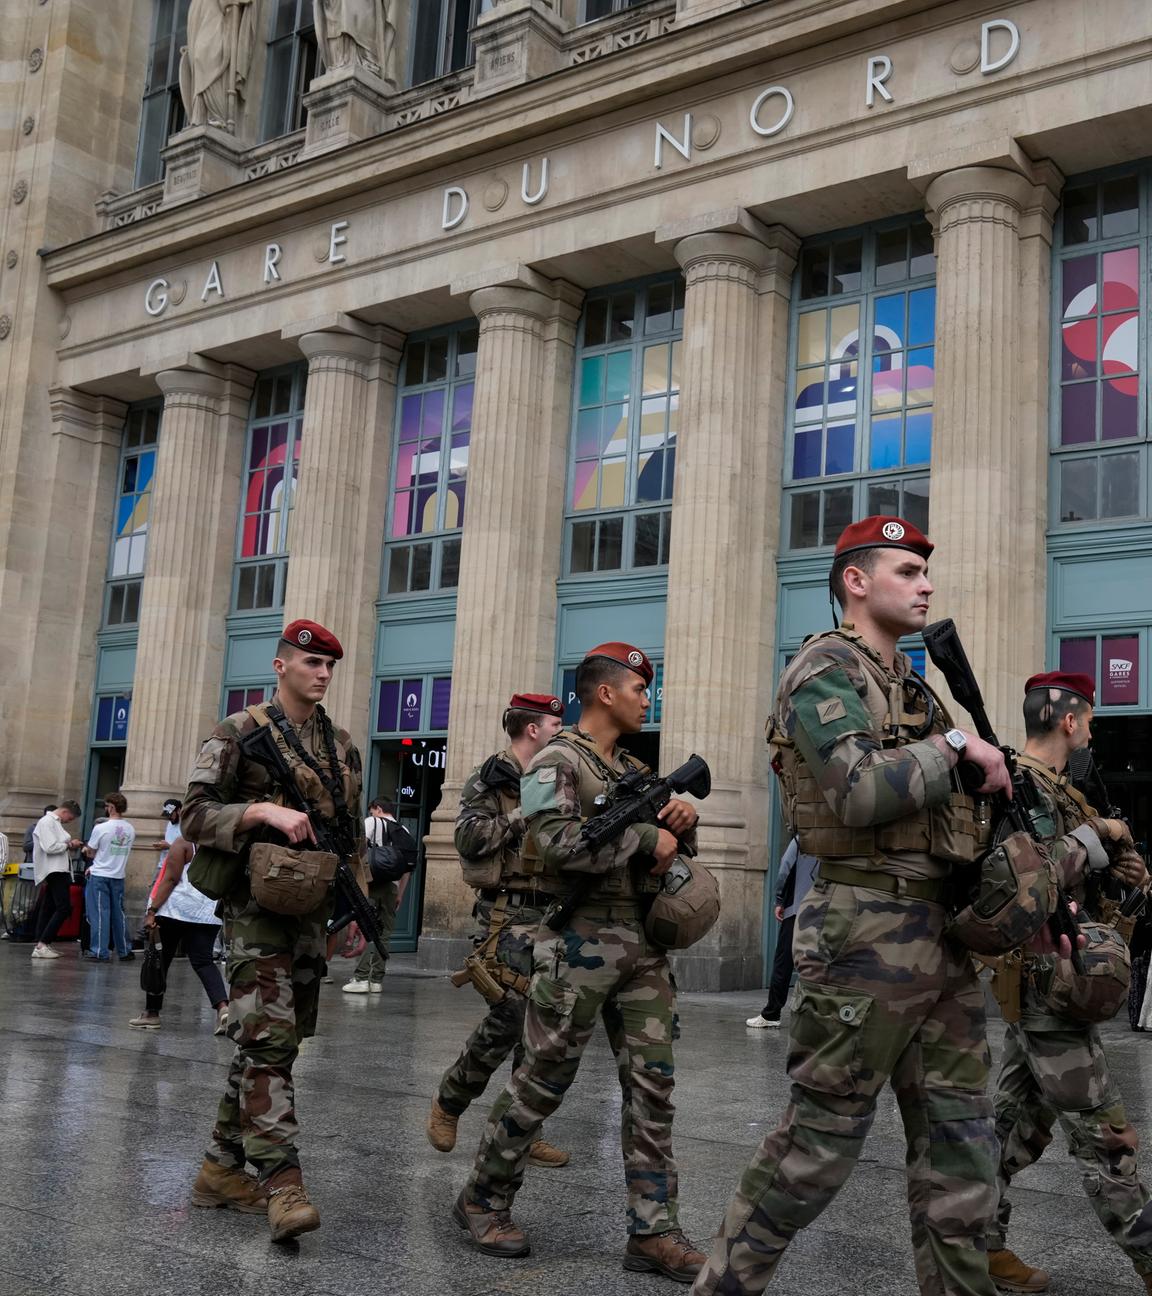 Soldaten patroullieren vor dem Gare du Nord in Paris.